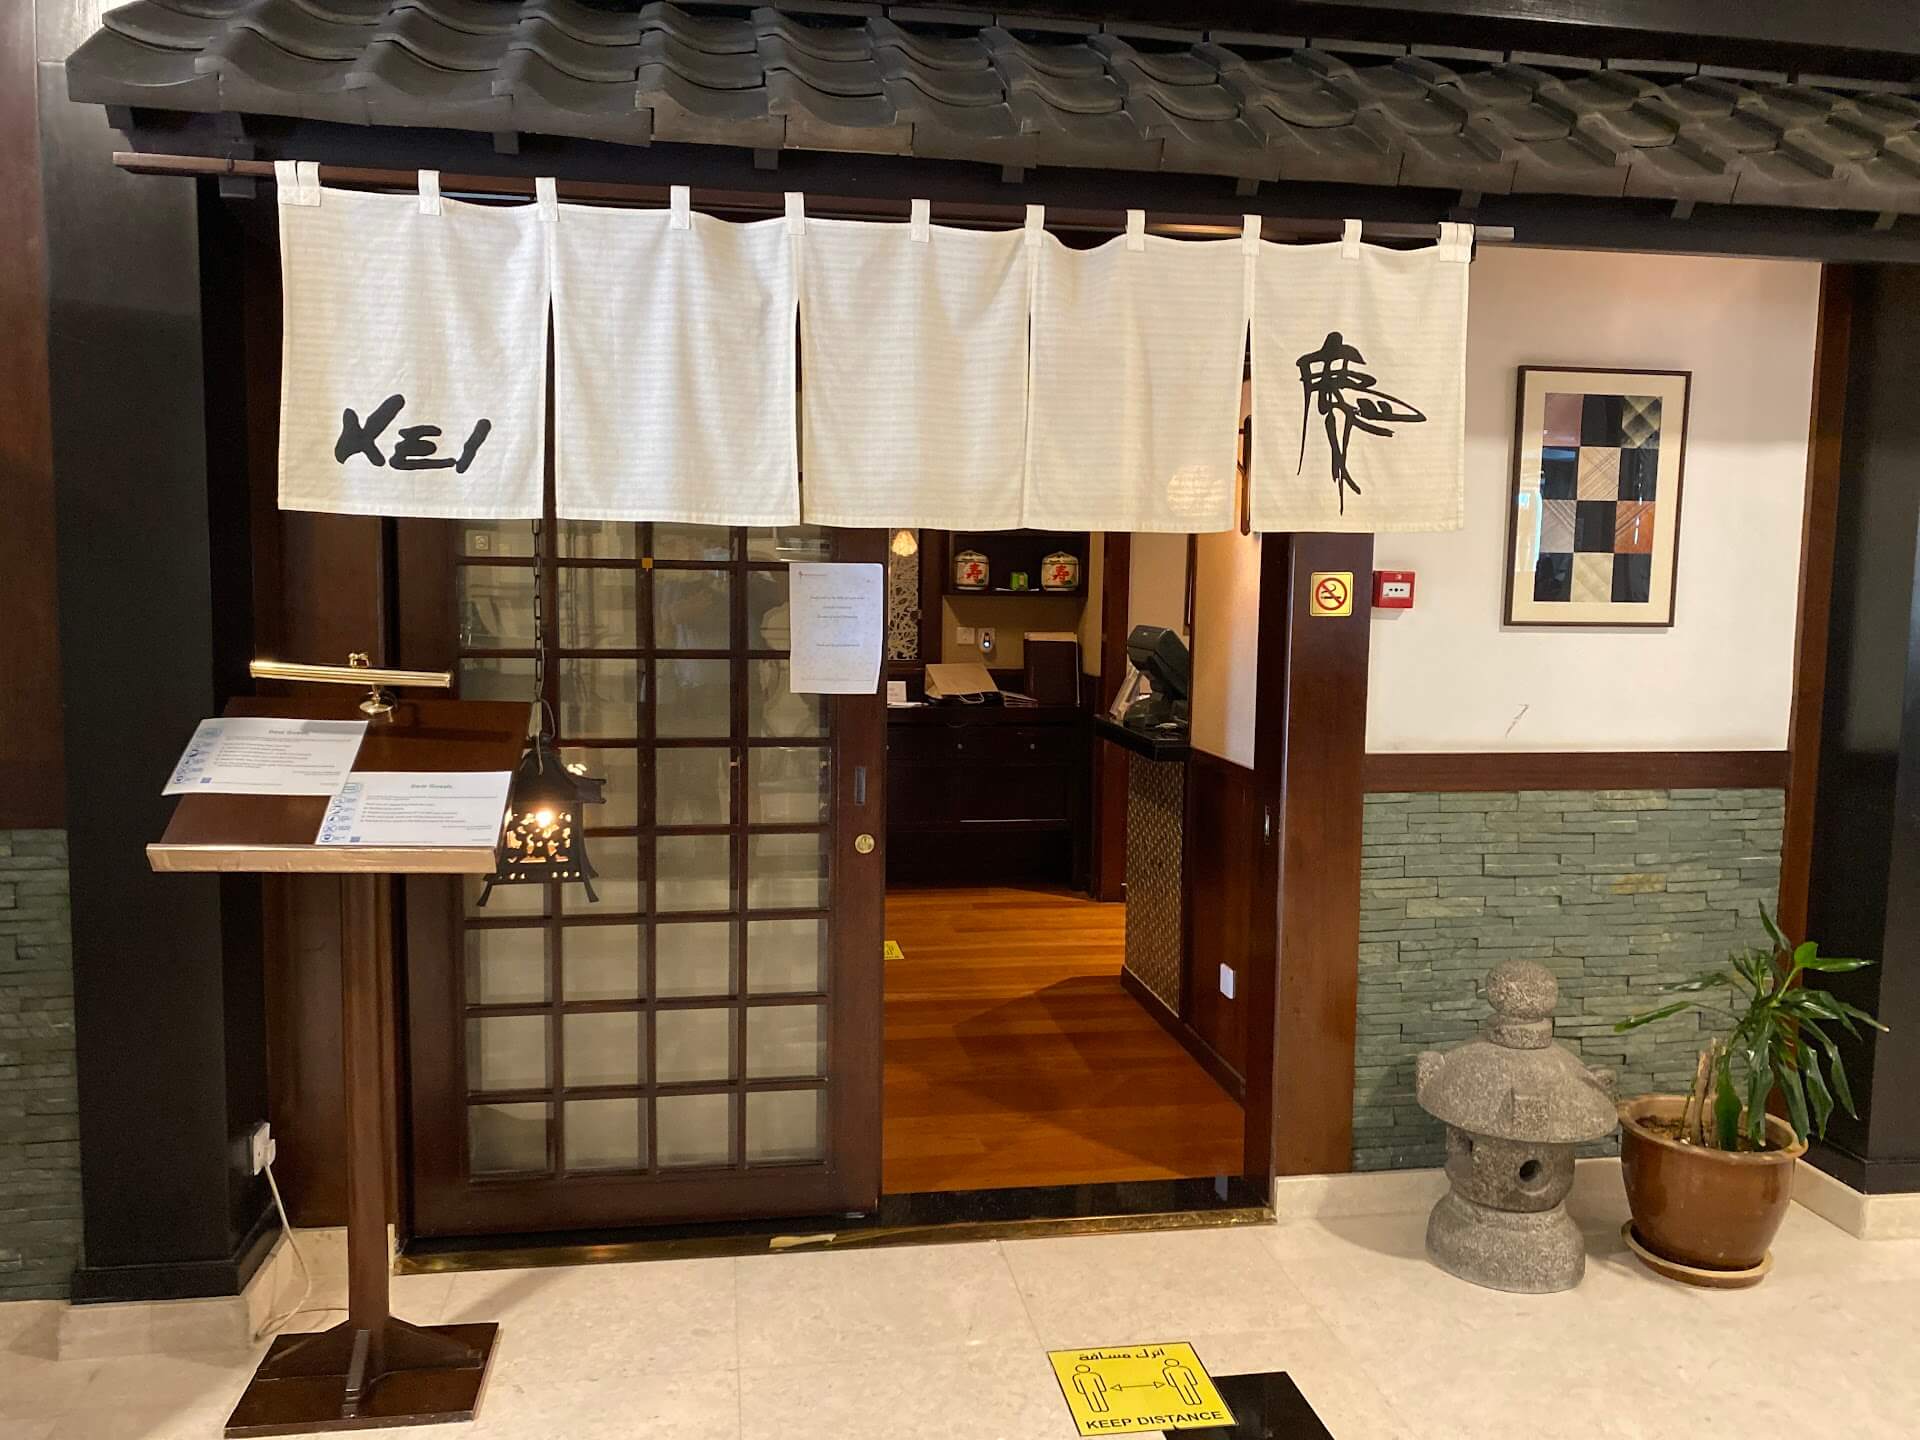 Kei Japanese Restaurant